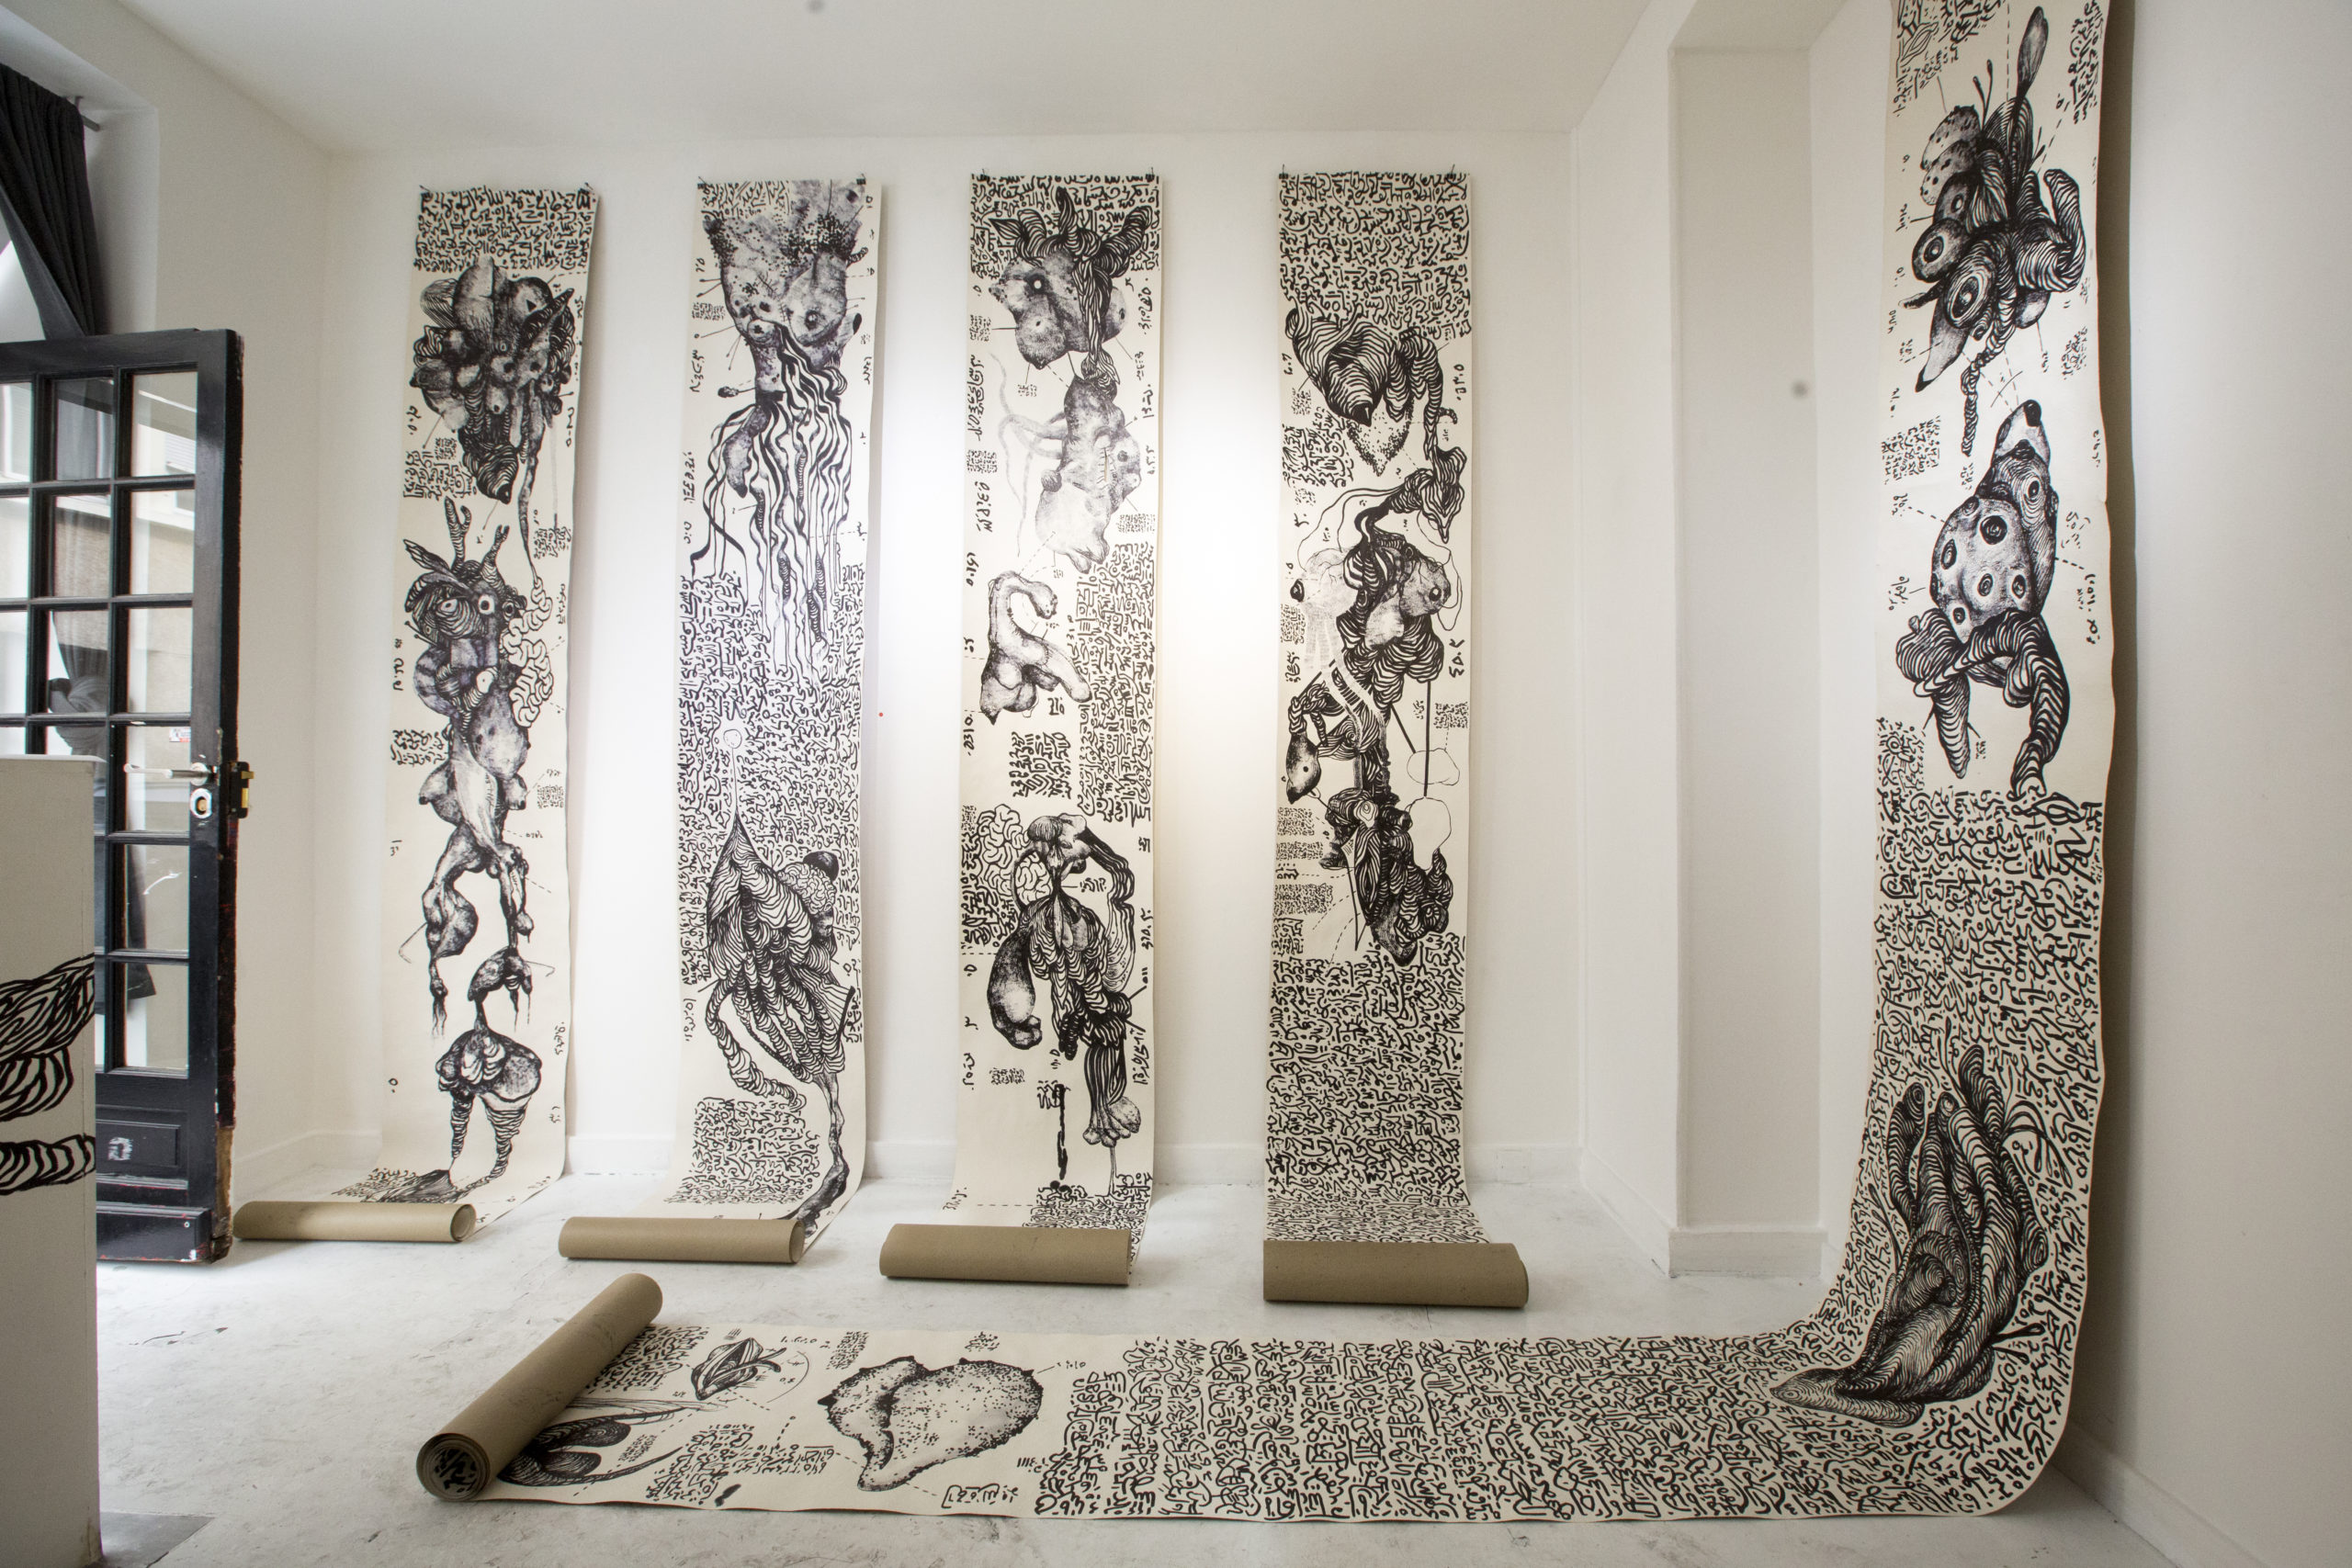 2. Gonorrhea. Exhibition view. Ink on raw wallpapers. Galerie La La Lande. Paris. 2019